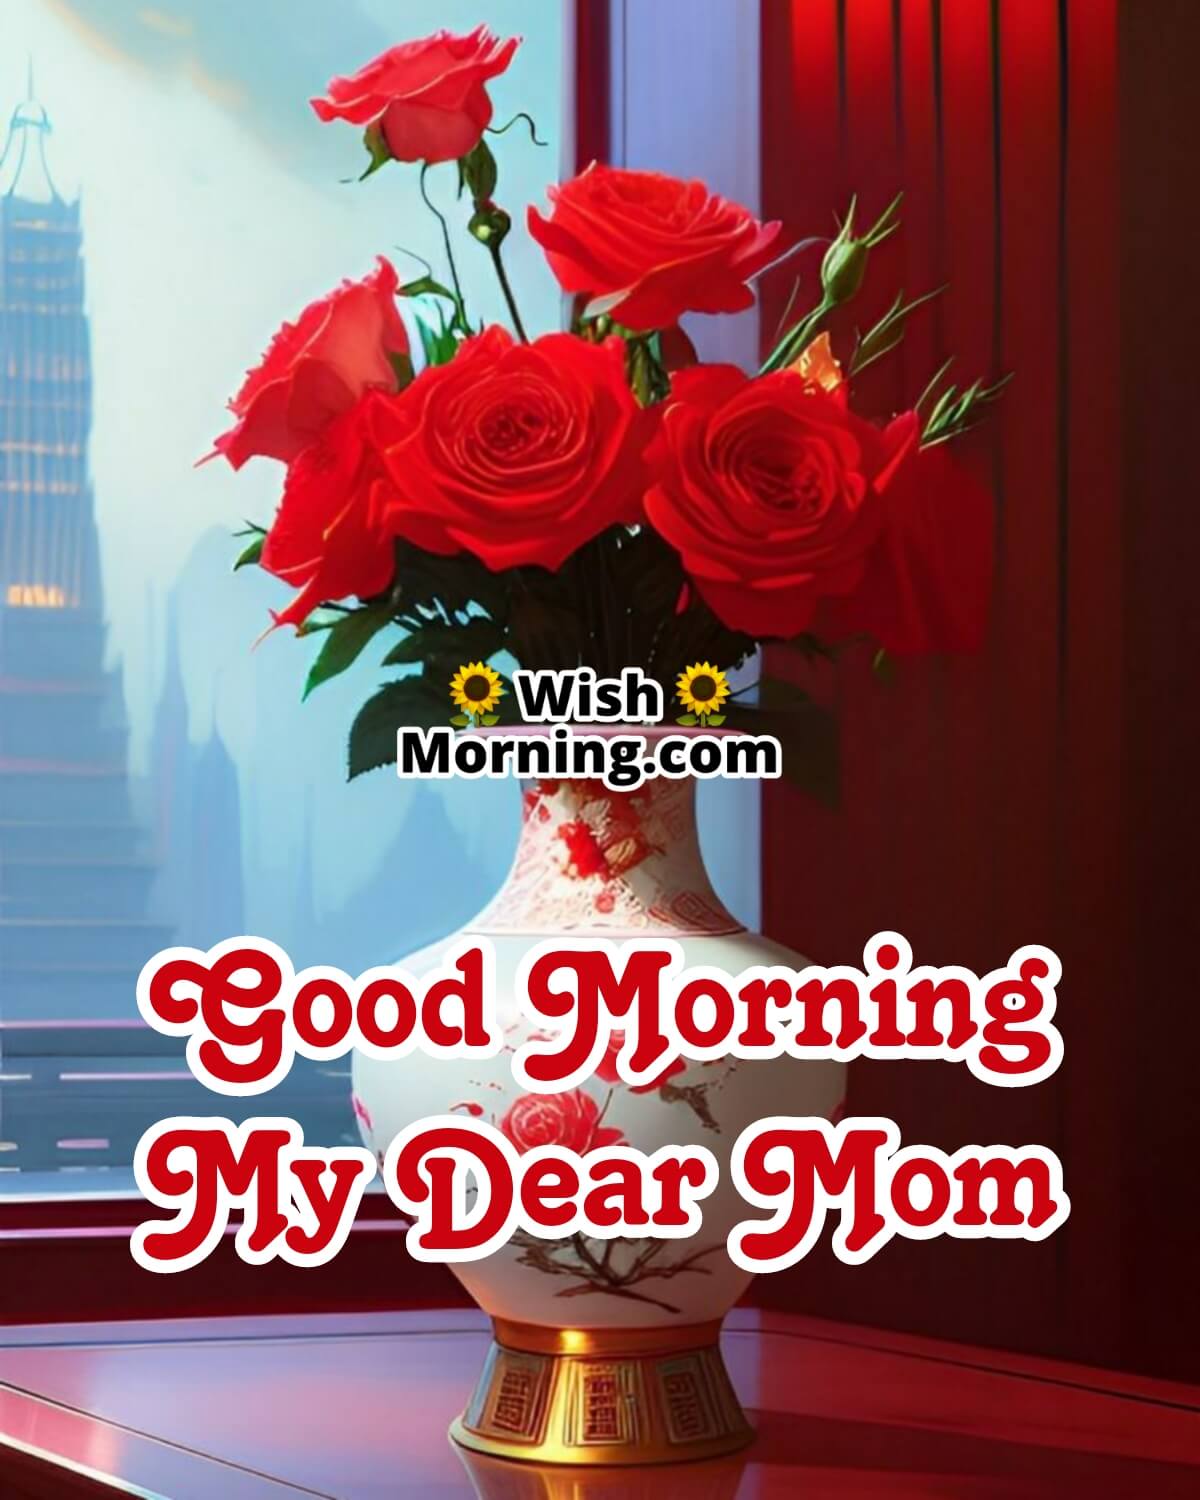 Good Morning My Dear Mom